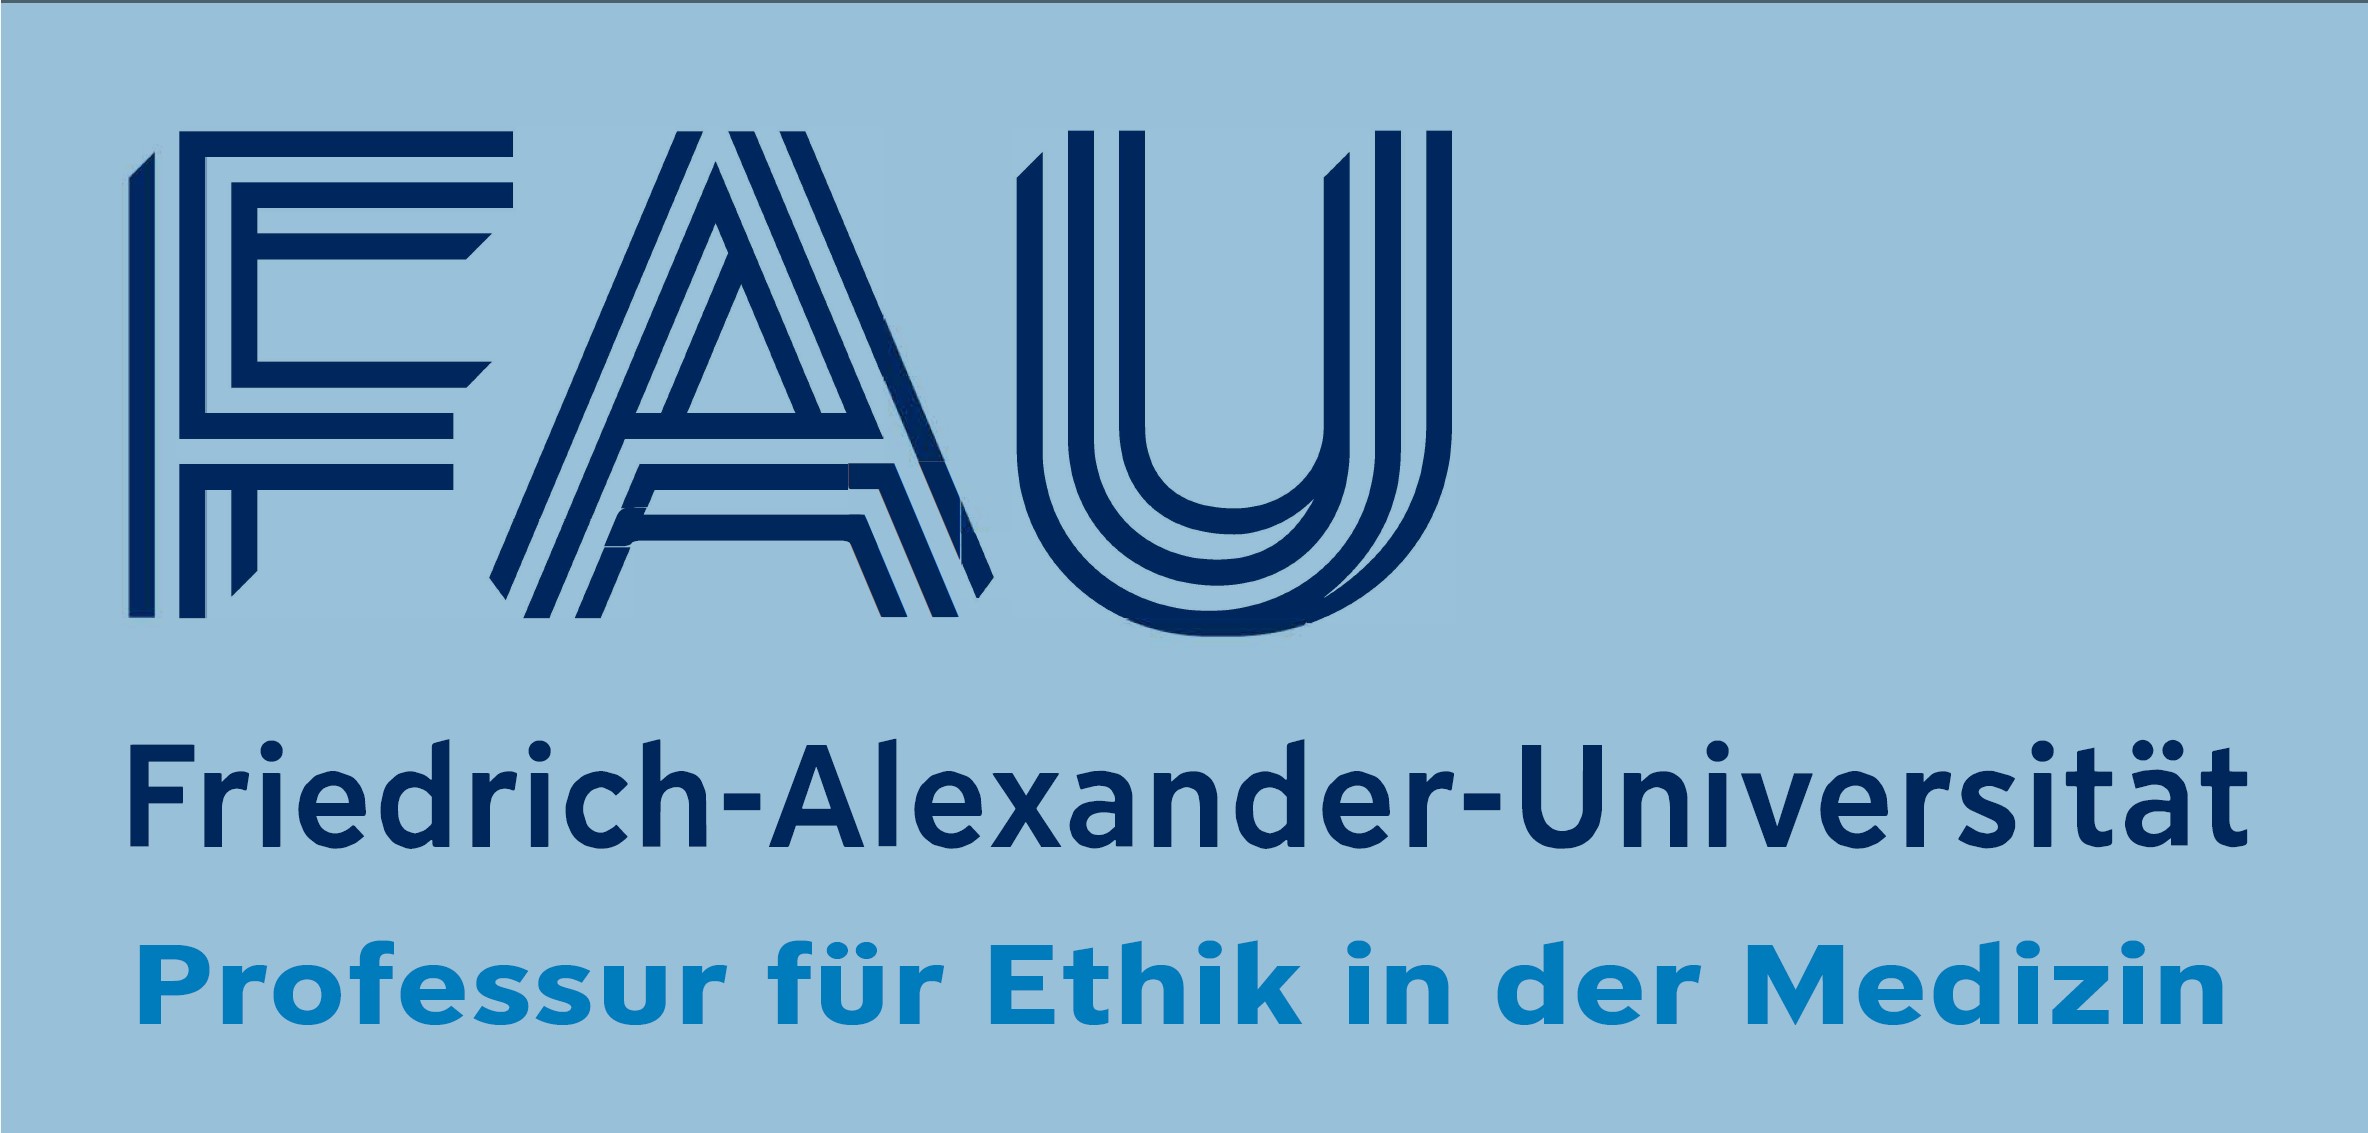 Das Logo der Friedrich-Alexander-Universität, Professur für Ethik in der Medizin